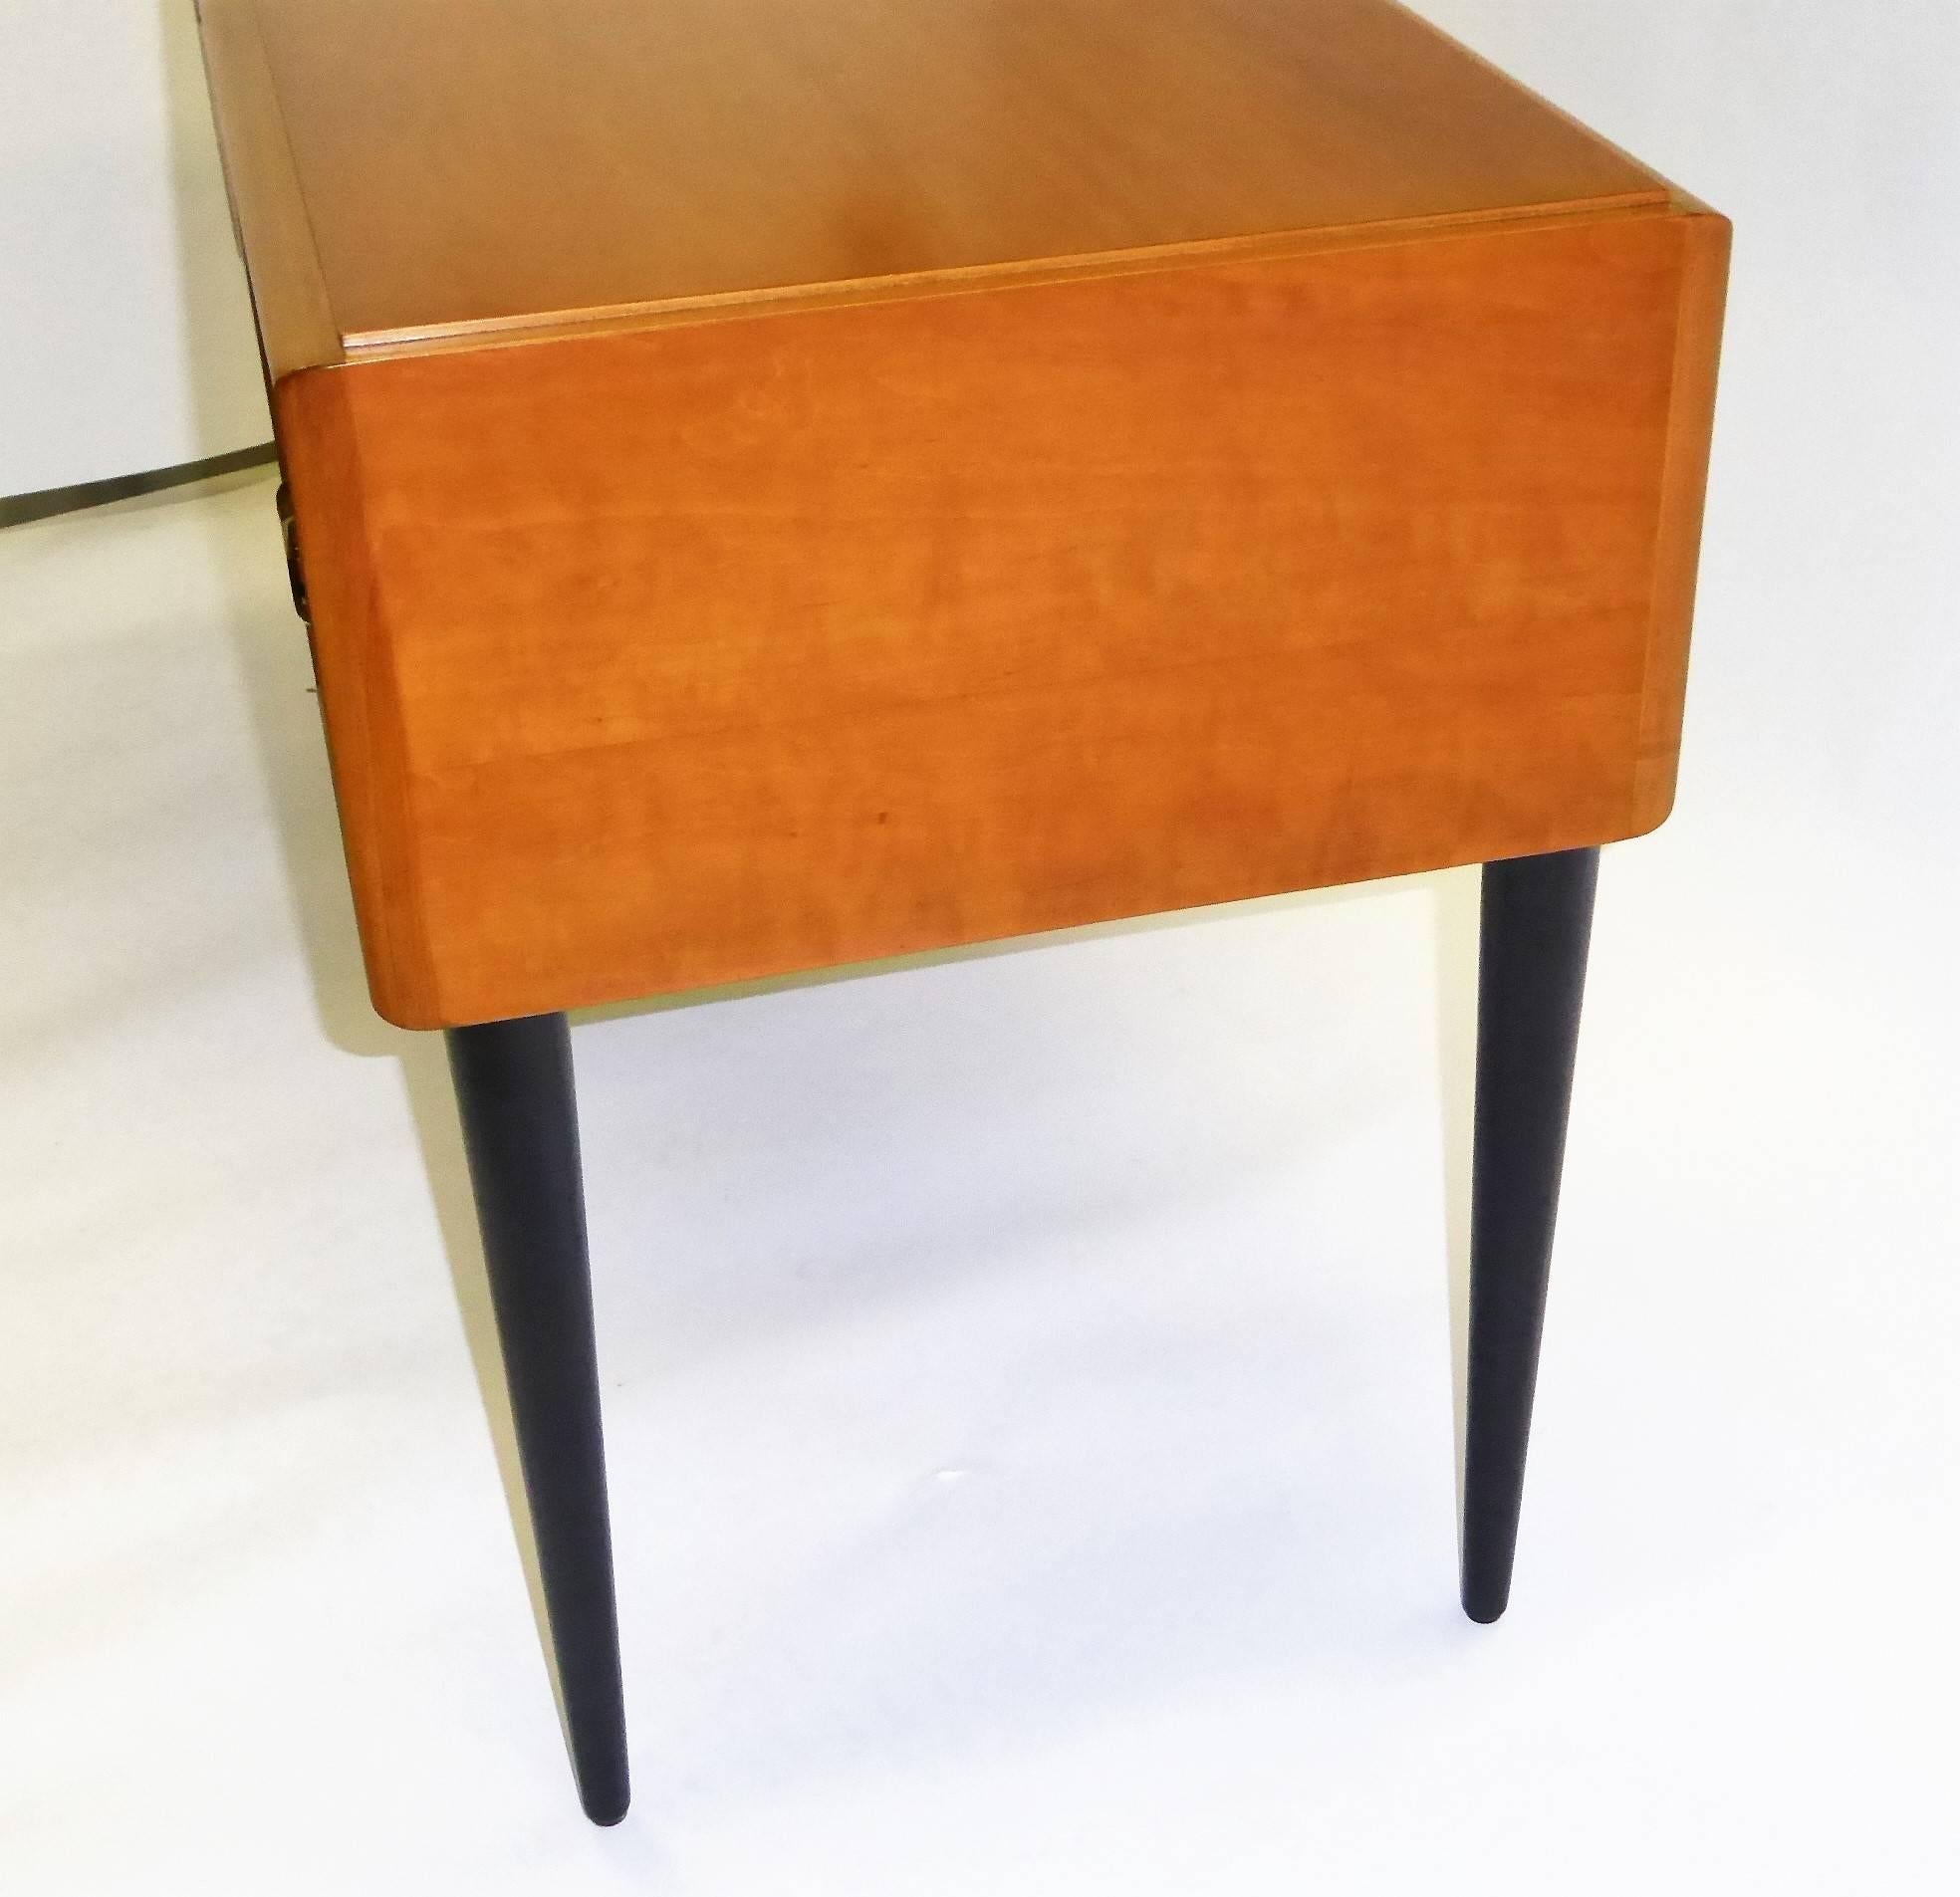 Mid-20th Century Early 1950s Paul Frankl Desk Vanity for John Stuart Johnson Furniture